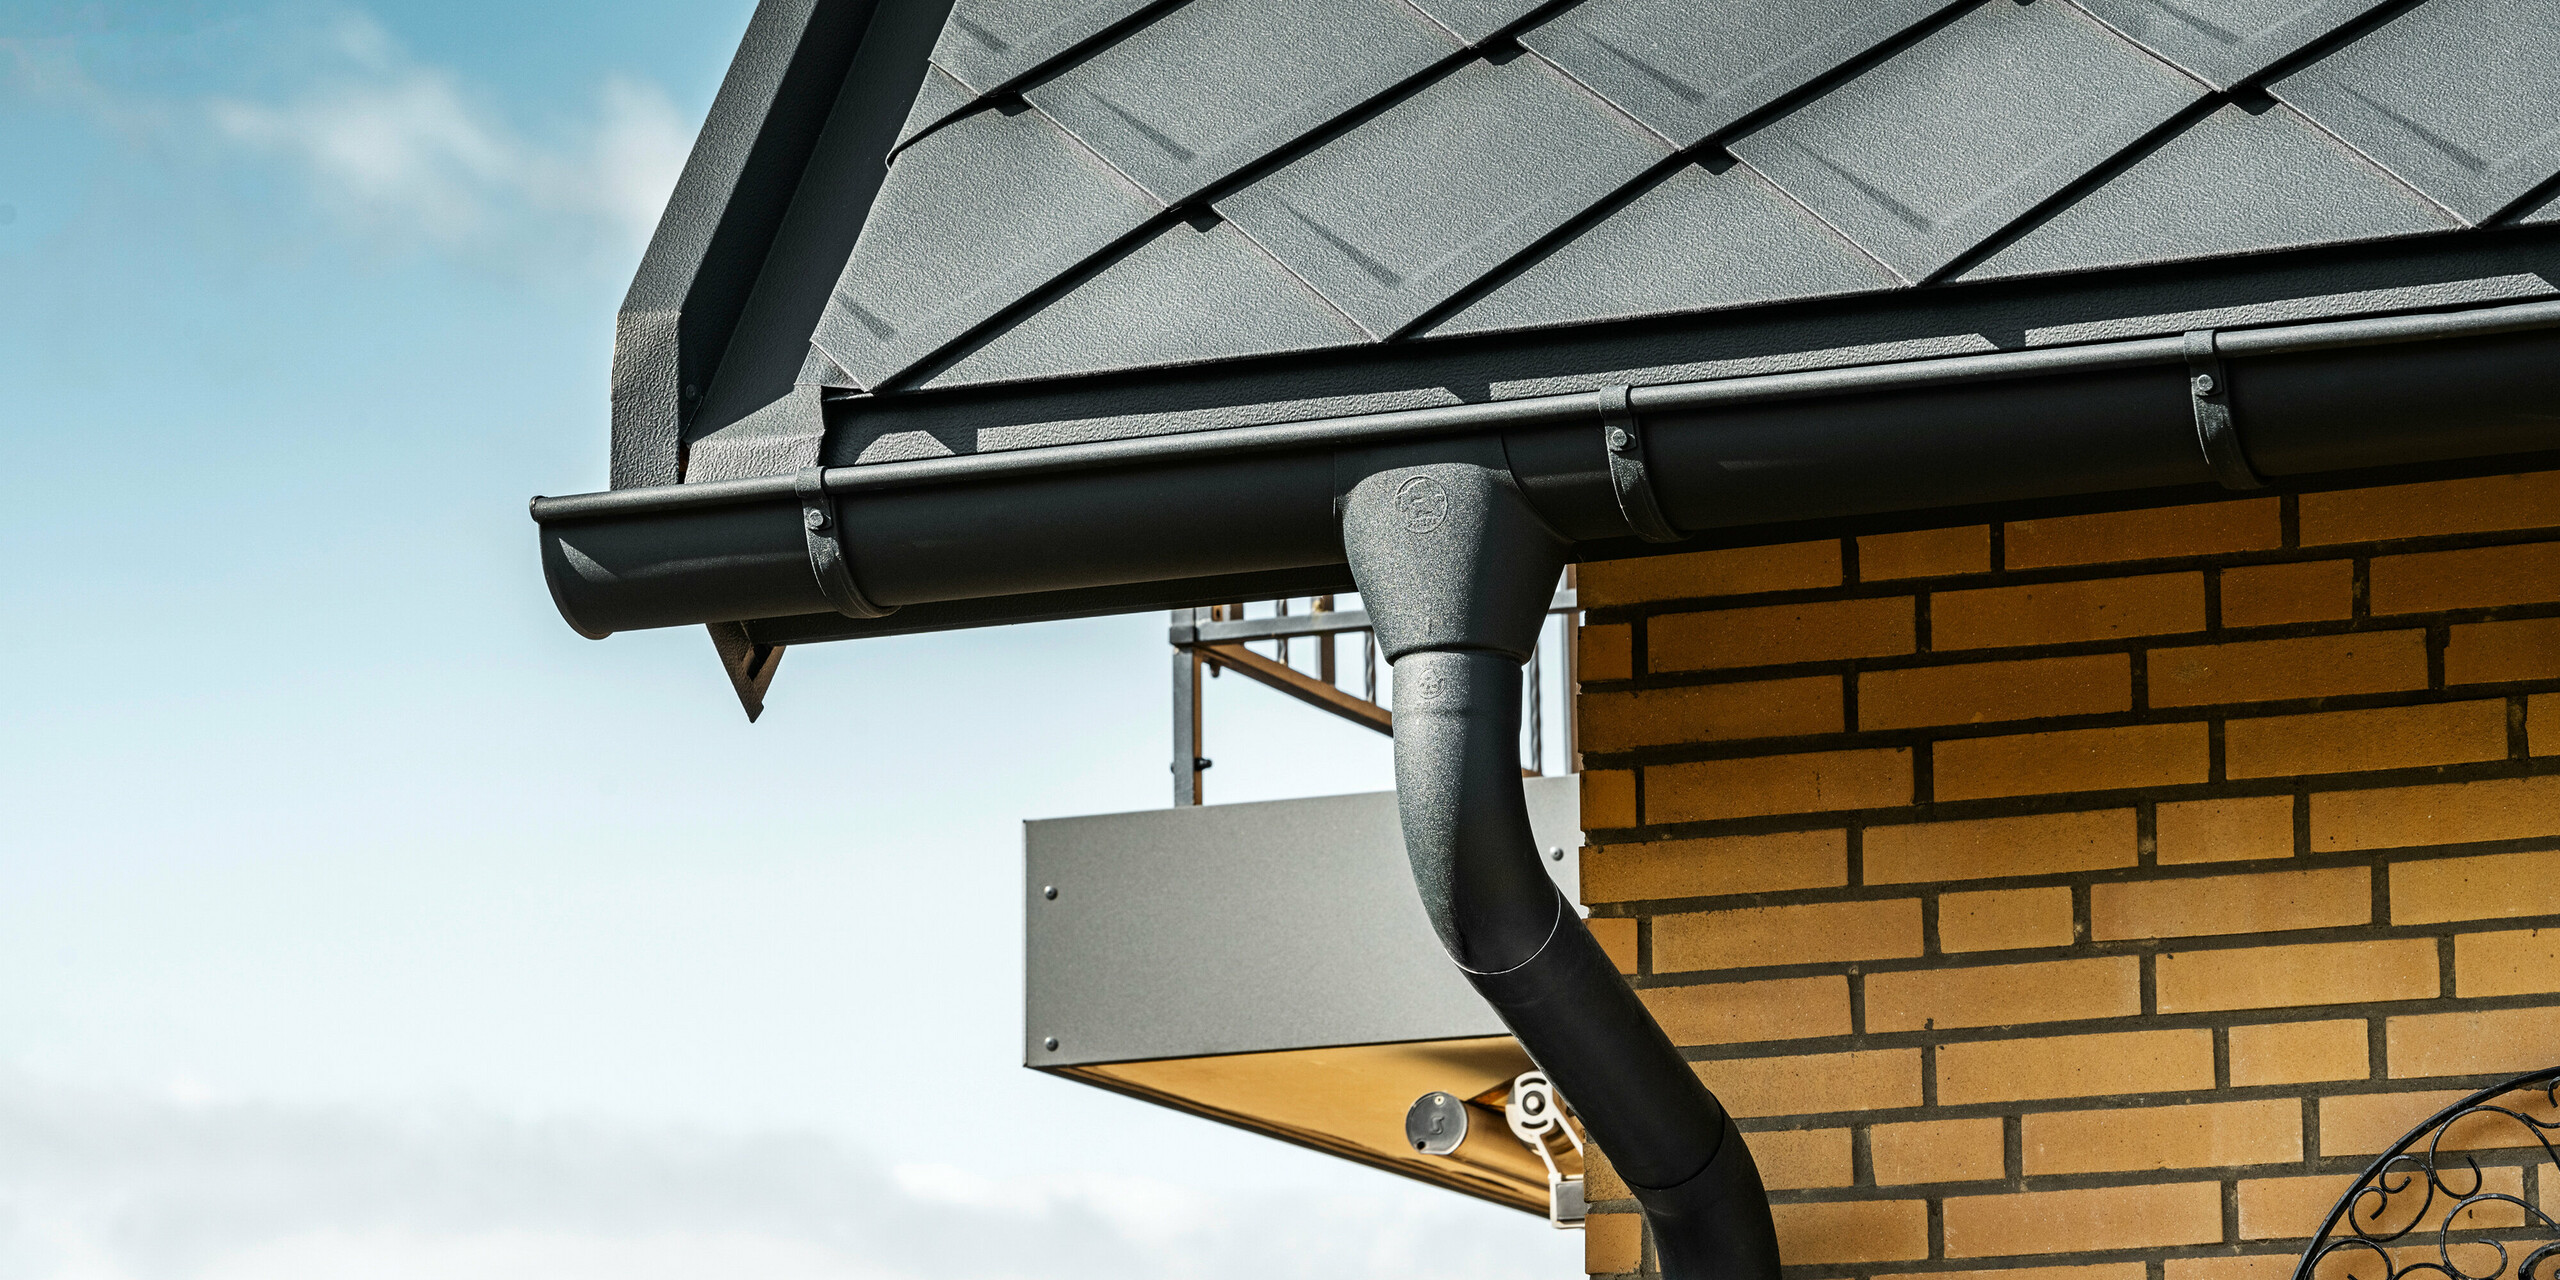 Podroben prikaz PREFA sistema za odvodnjavanje strehe enodružinske hiše s PREFA strešnimi rombi 29×29 antracitne barve, ki izstopajo na strehi v ozadju. Vidite lahko žlebove in odtočno cev v P.10 antracit barvi, ki se brezhibno prilegajo celotnemu dizajnu. Rumene opečne stene hiše dajejo naraven barvni kontrast sodobnemu aluminijastemu strešnemu sistemu.